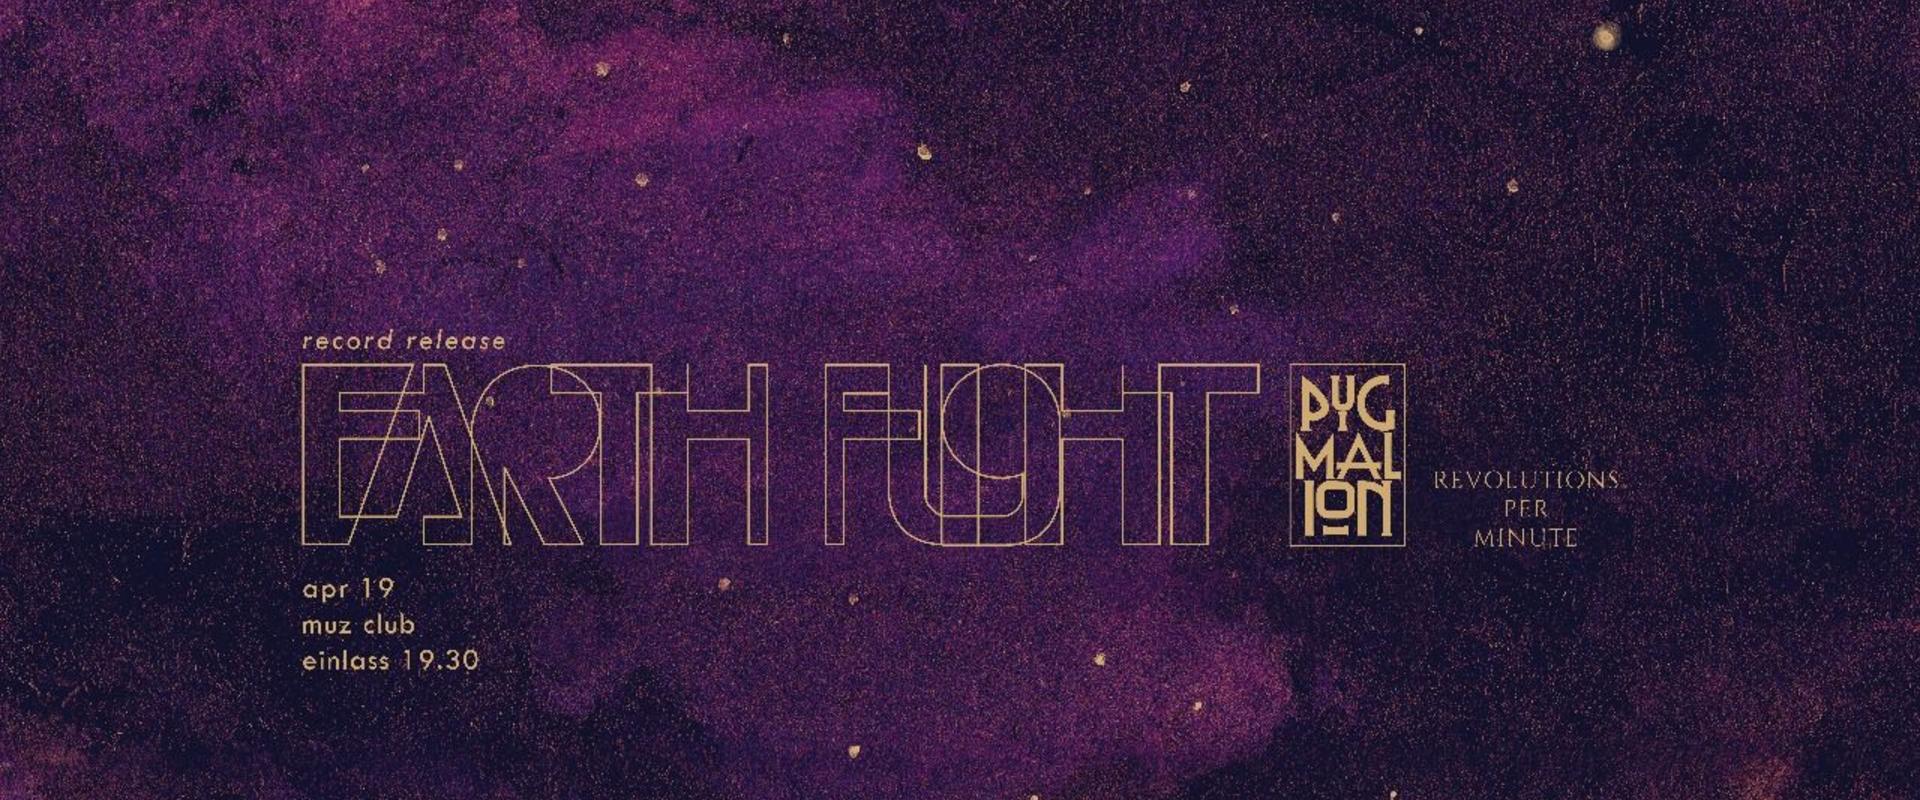 Earth Flight CD Release